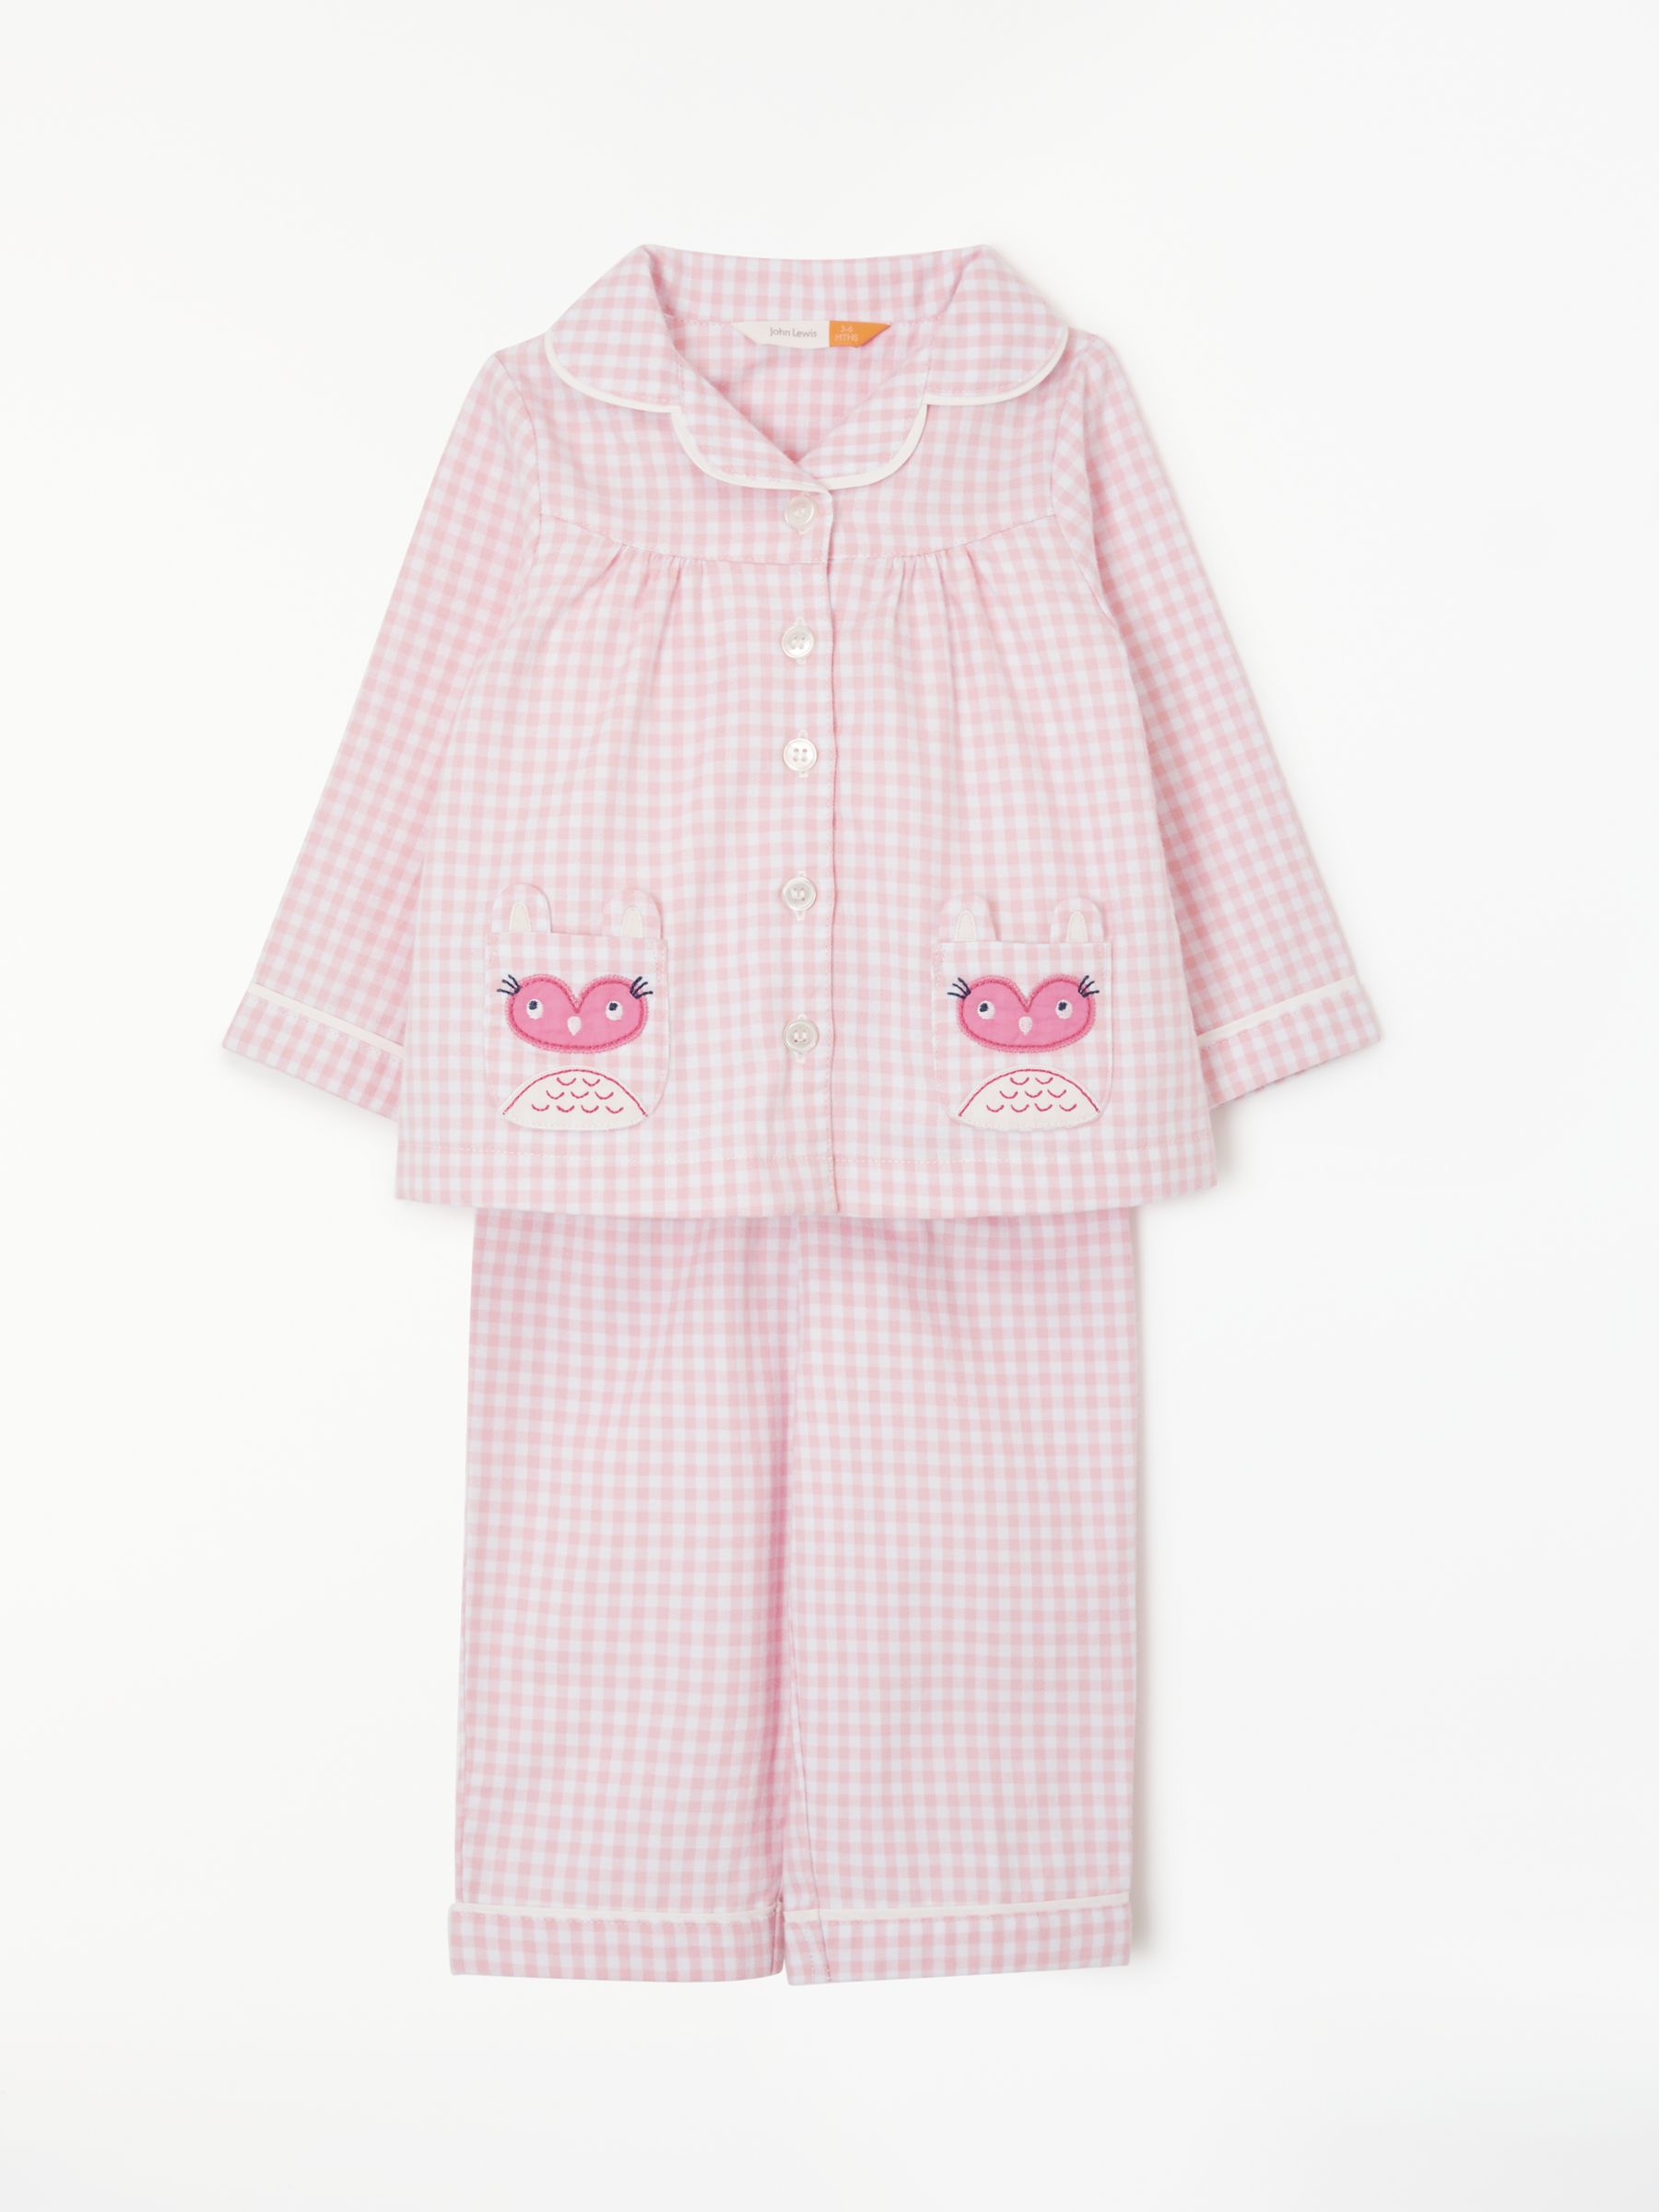 John Lewis & Partners Baby Owl Gingham Pyjamas, Pink at John Lewis ...